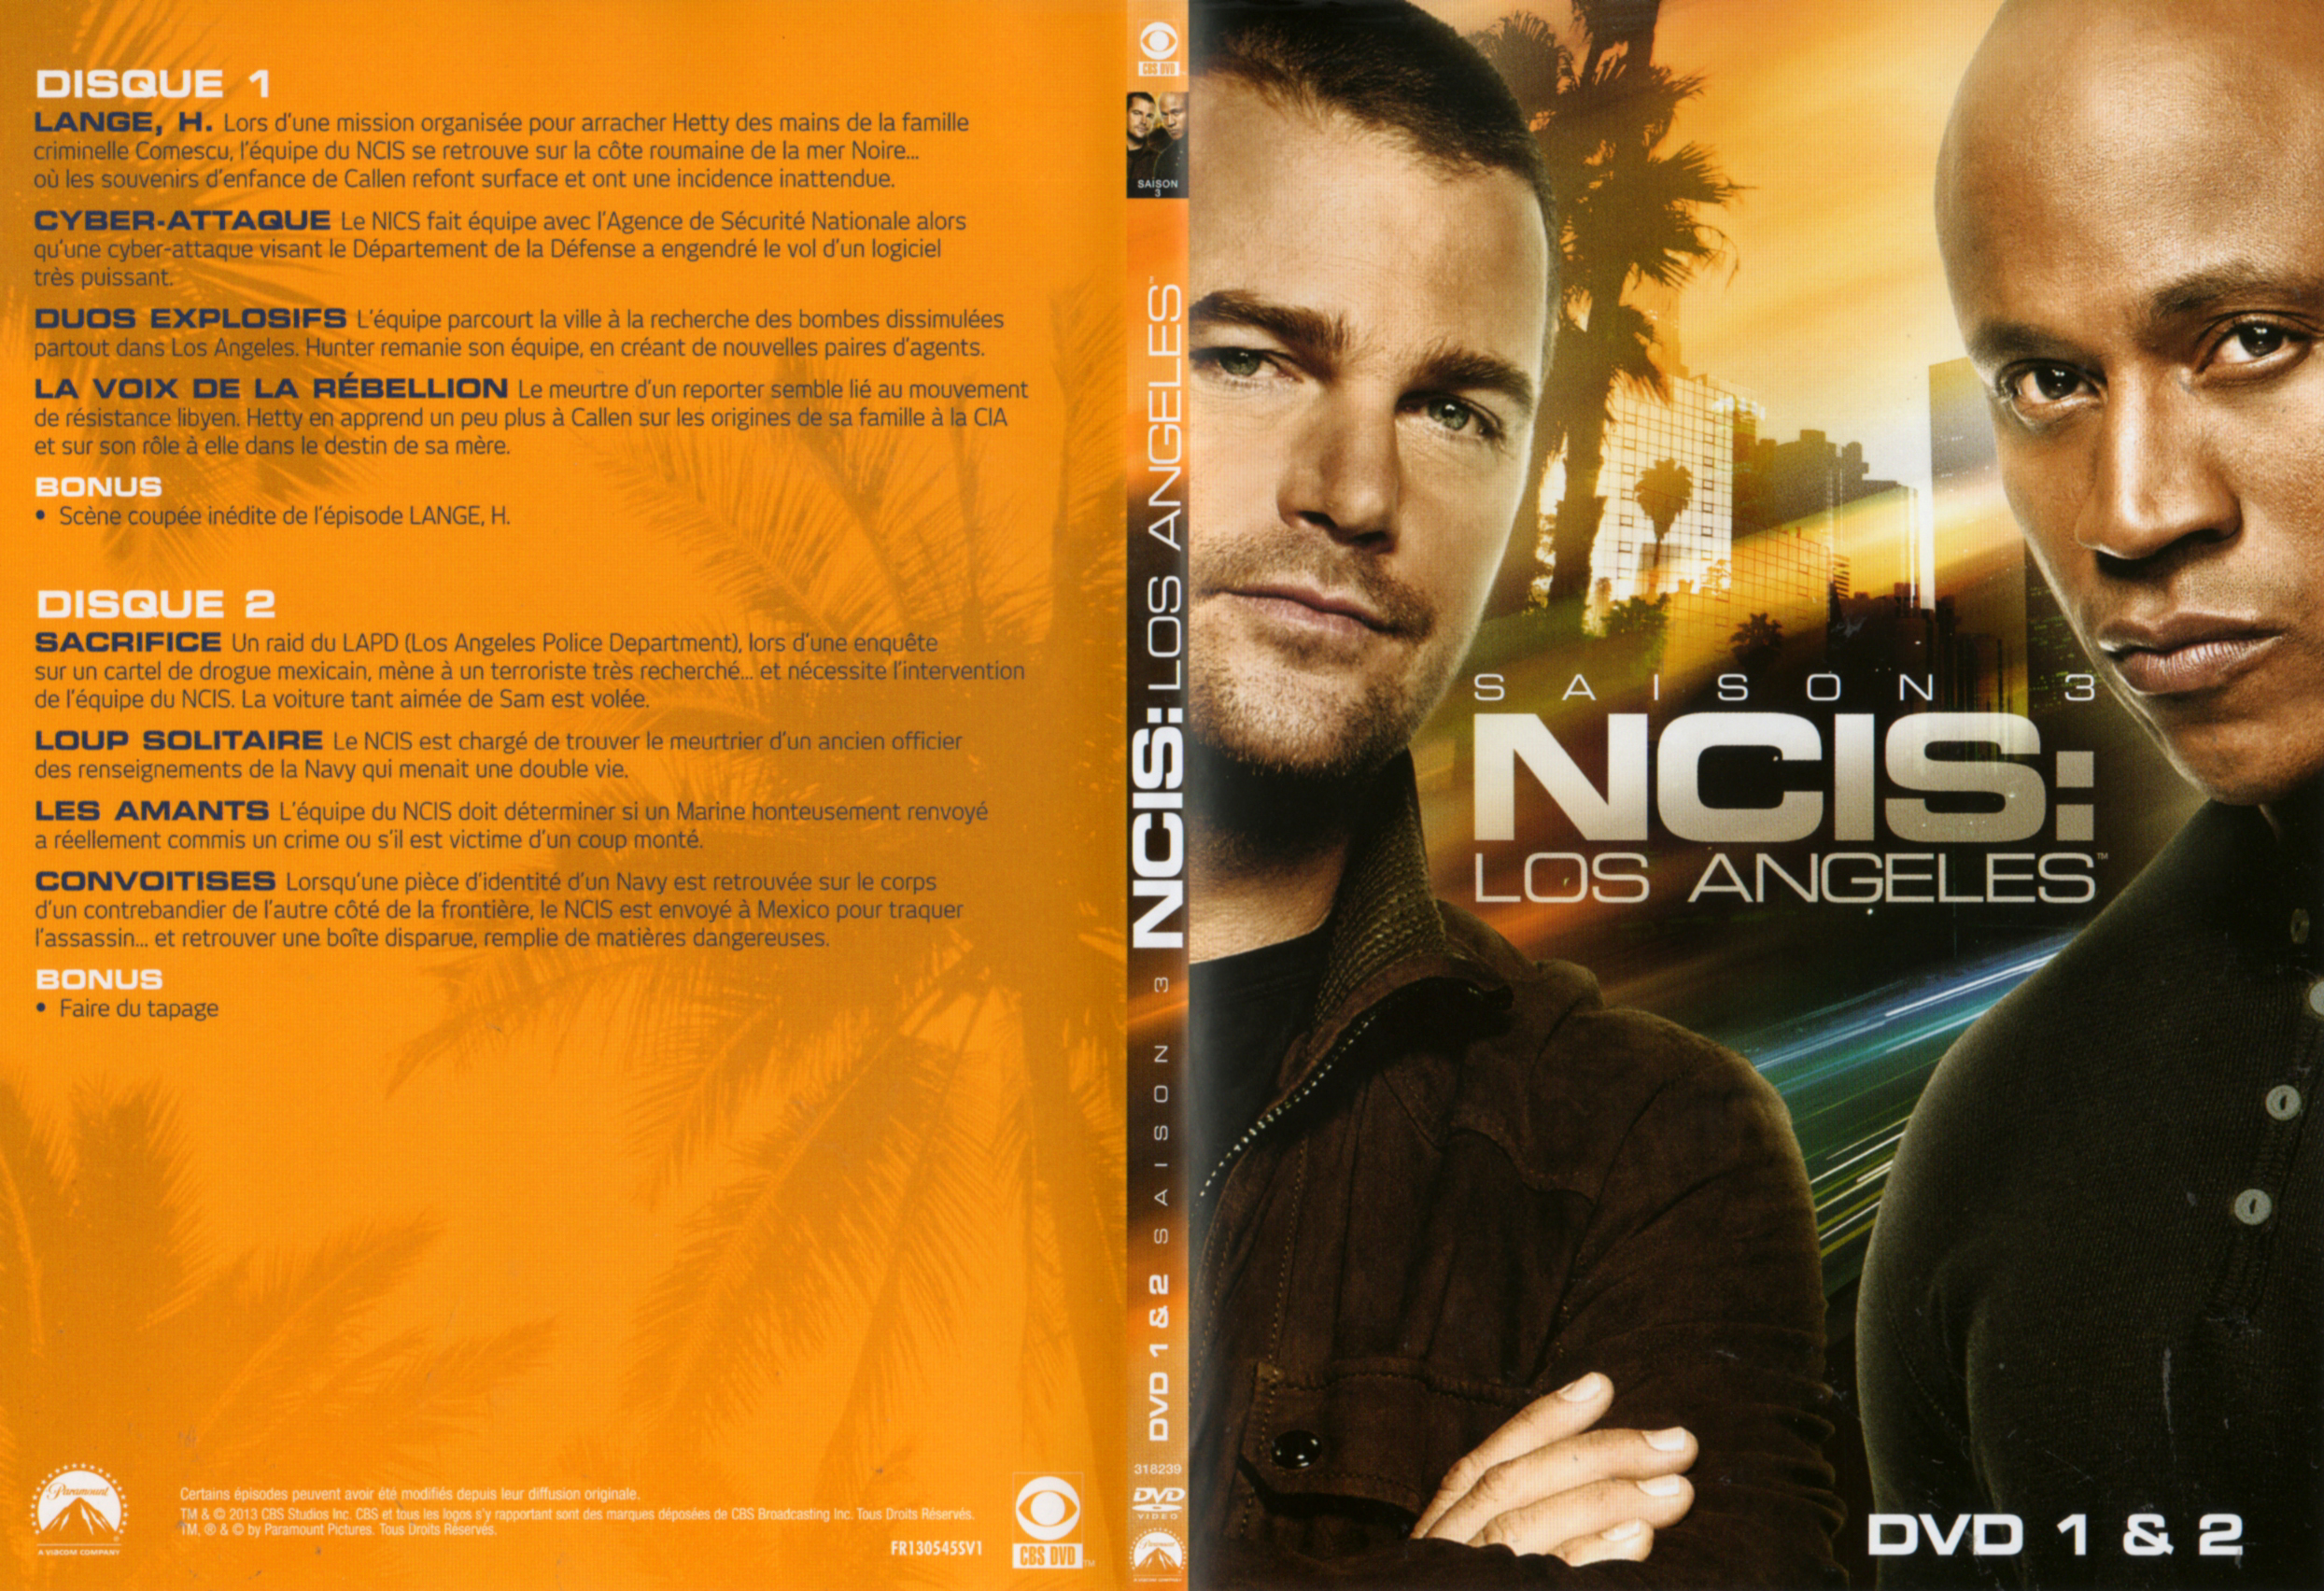 Jaquette DVD NCIS Los Angeles Saison 3 DVD 1